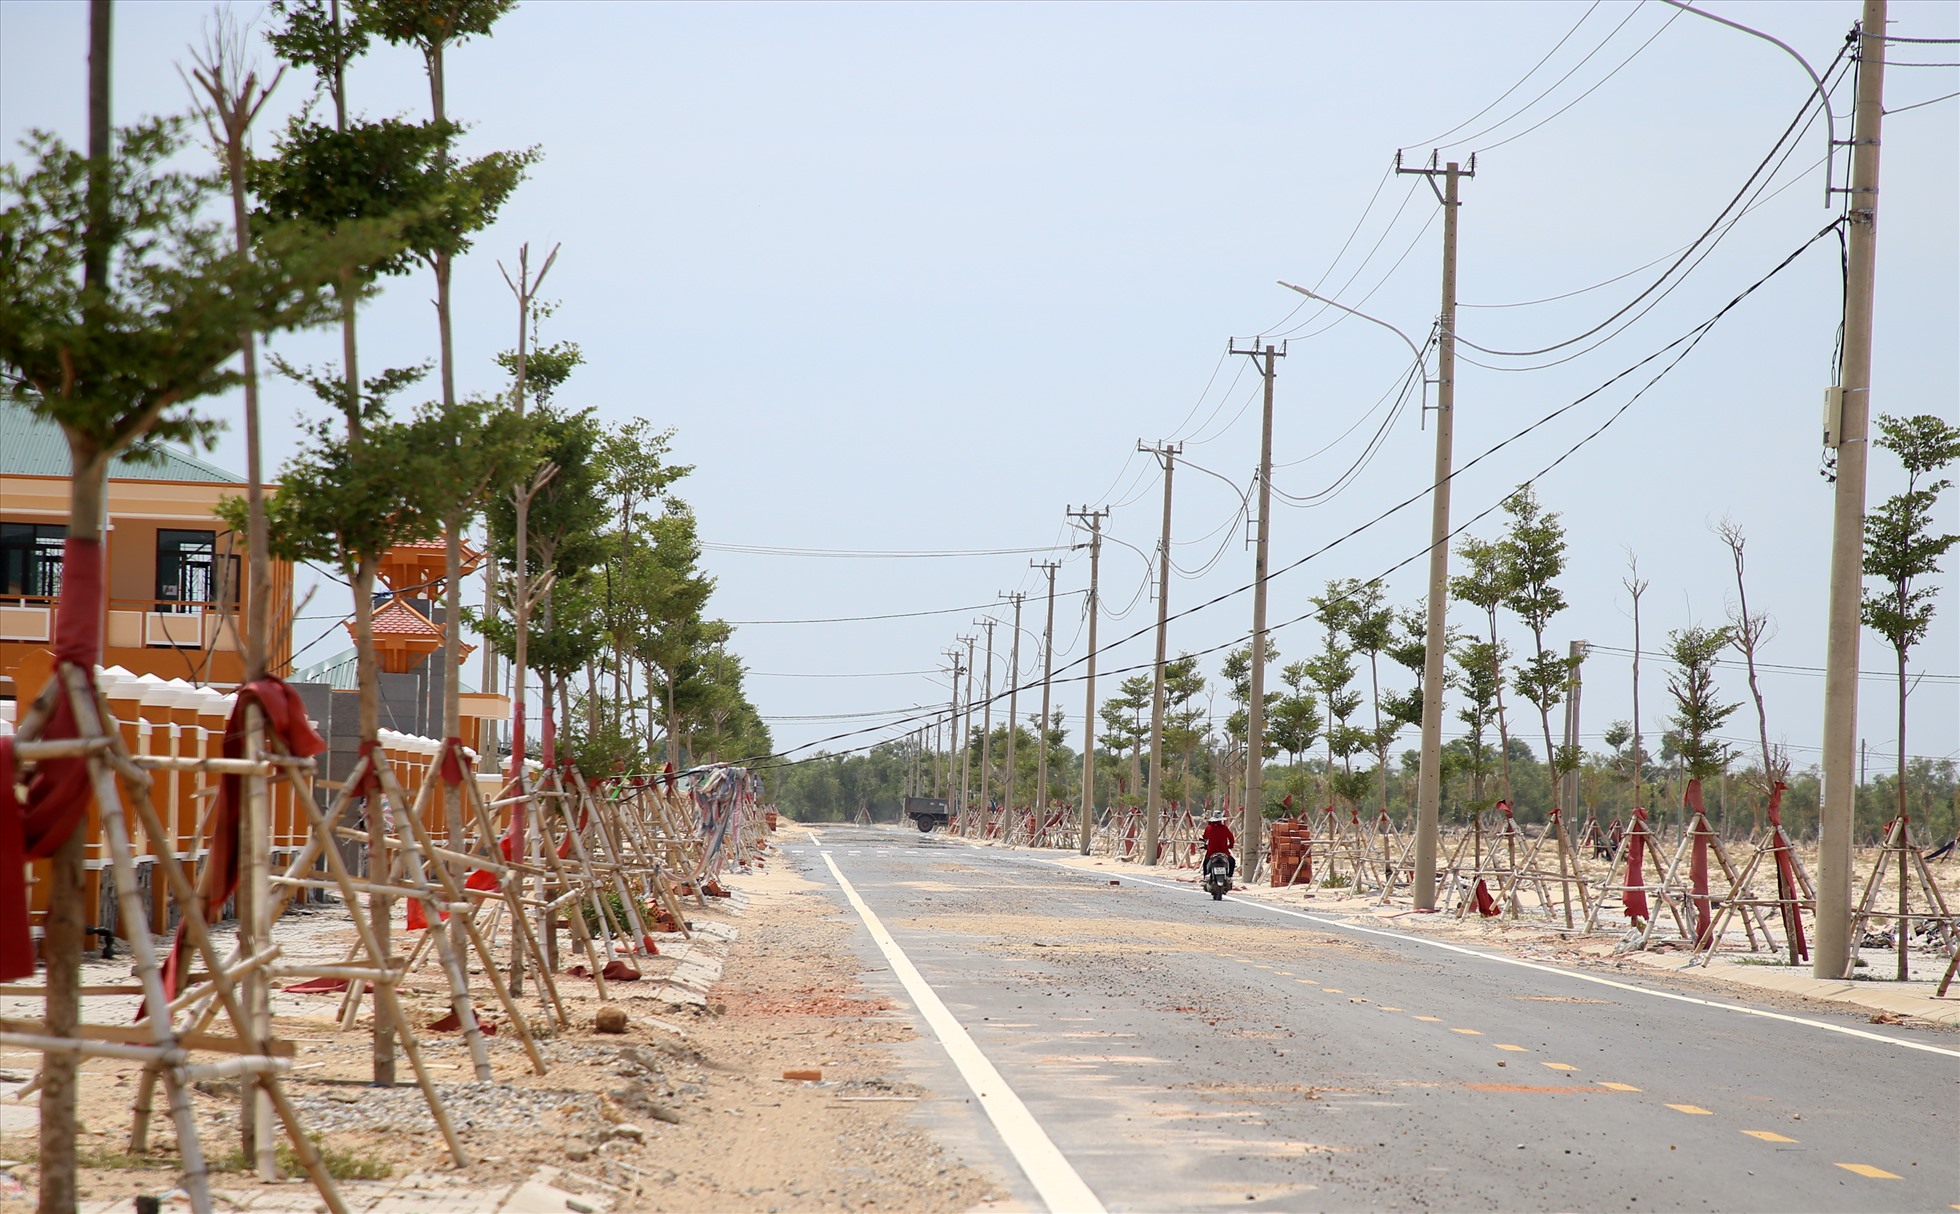 พื้นที่ตั้งถิ่นฐานใหม่มีระบบไฟฟ้าขนาดใหญ่ ถนน โรงเรียน และสถานีก่อสร้าง แต่ถ้าโครงการโรงไฟฟ้าพลังความร้อน Quang Tri หยุดดำเนินการ จะไม่สามารถย้ายคนมาที่นี่ได้ .  ภาพถ่าย: “Hung Tho”